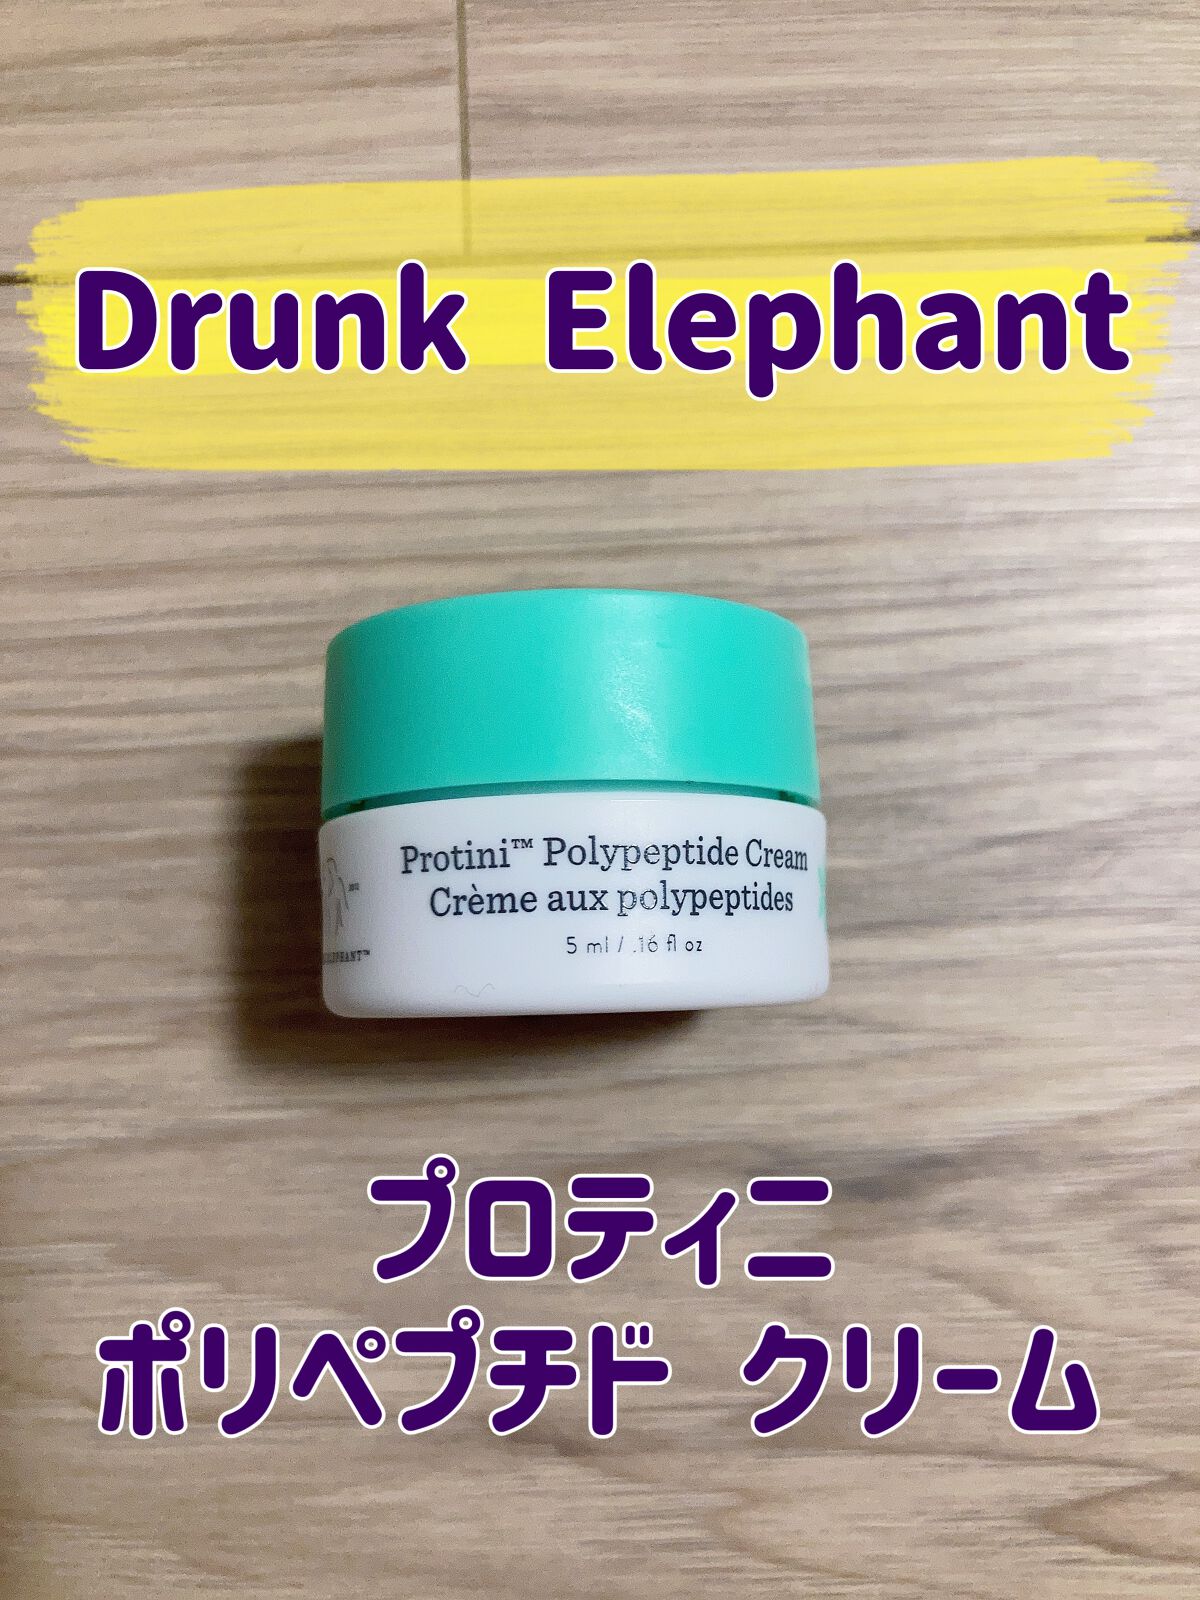 コスメ/美容Drunk Elephantプロティニ ポリペプチド クリーム